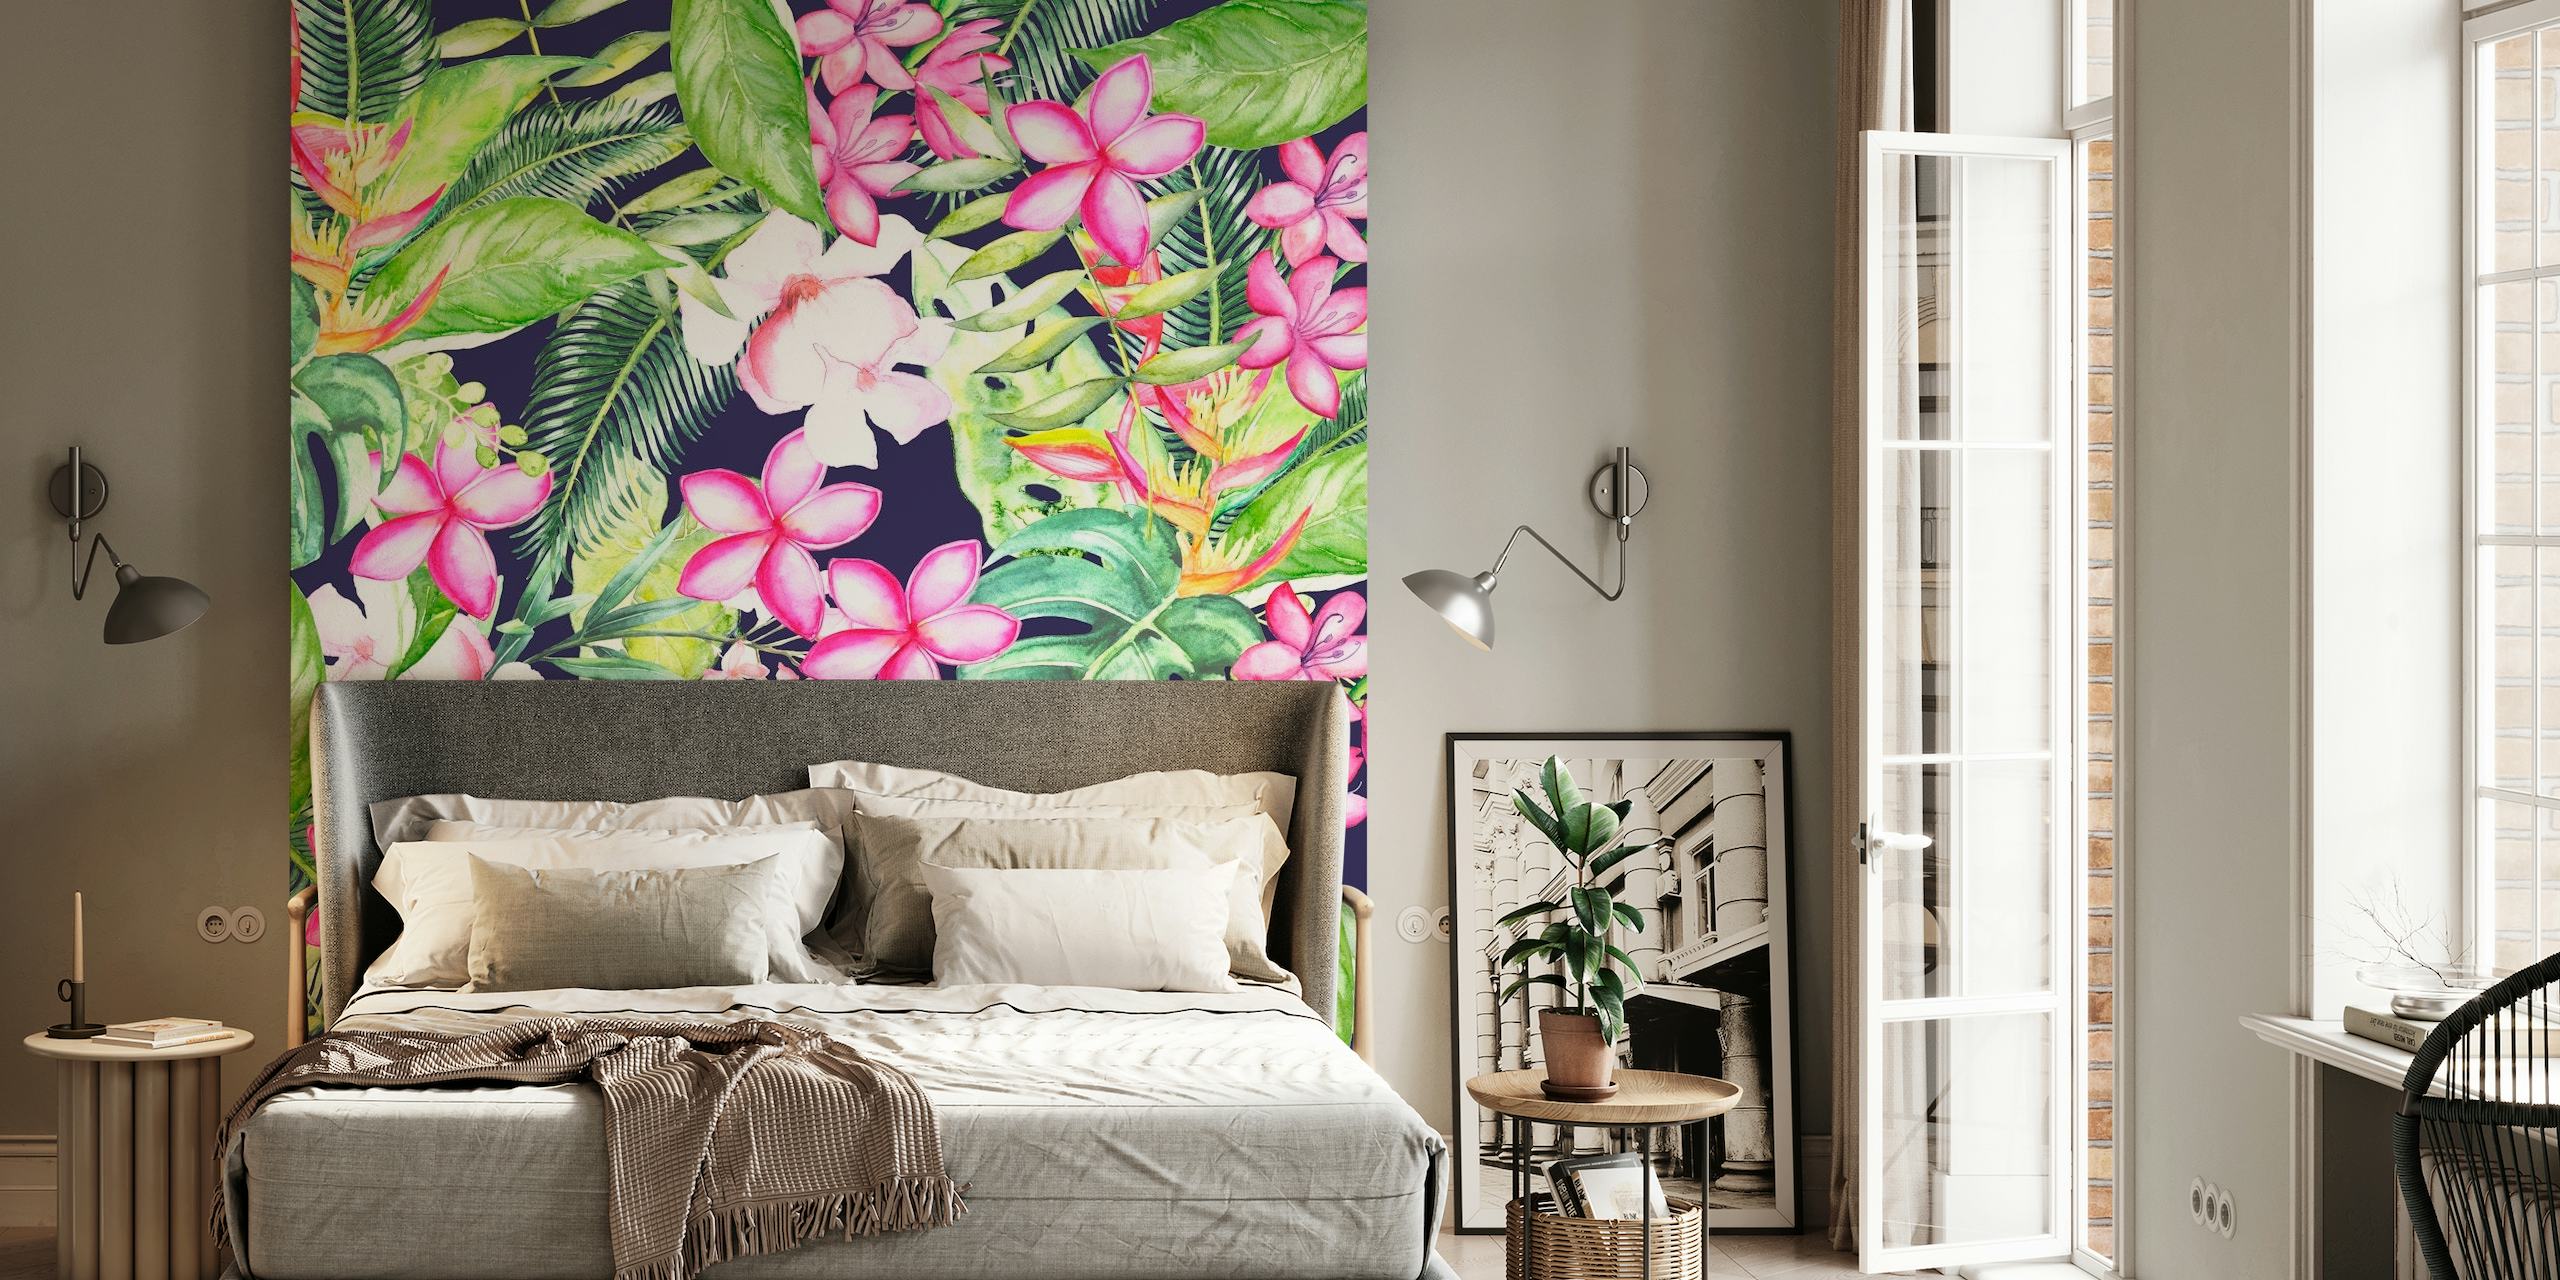 A Tropical Garden 1 wallpaper